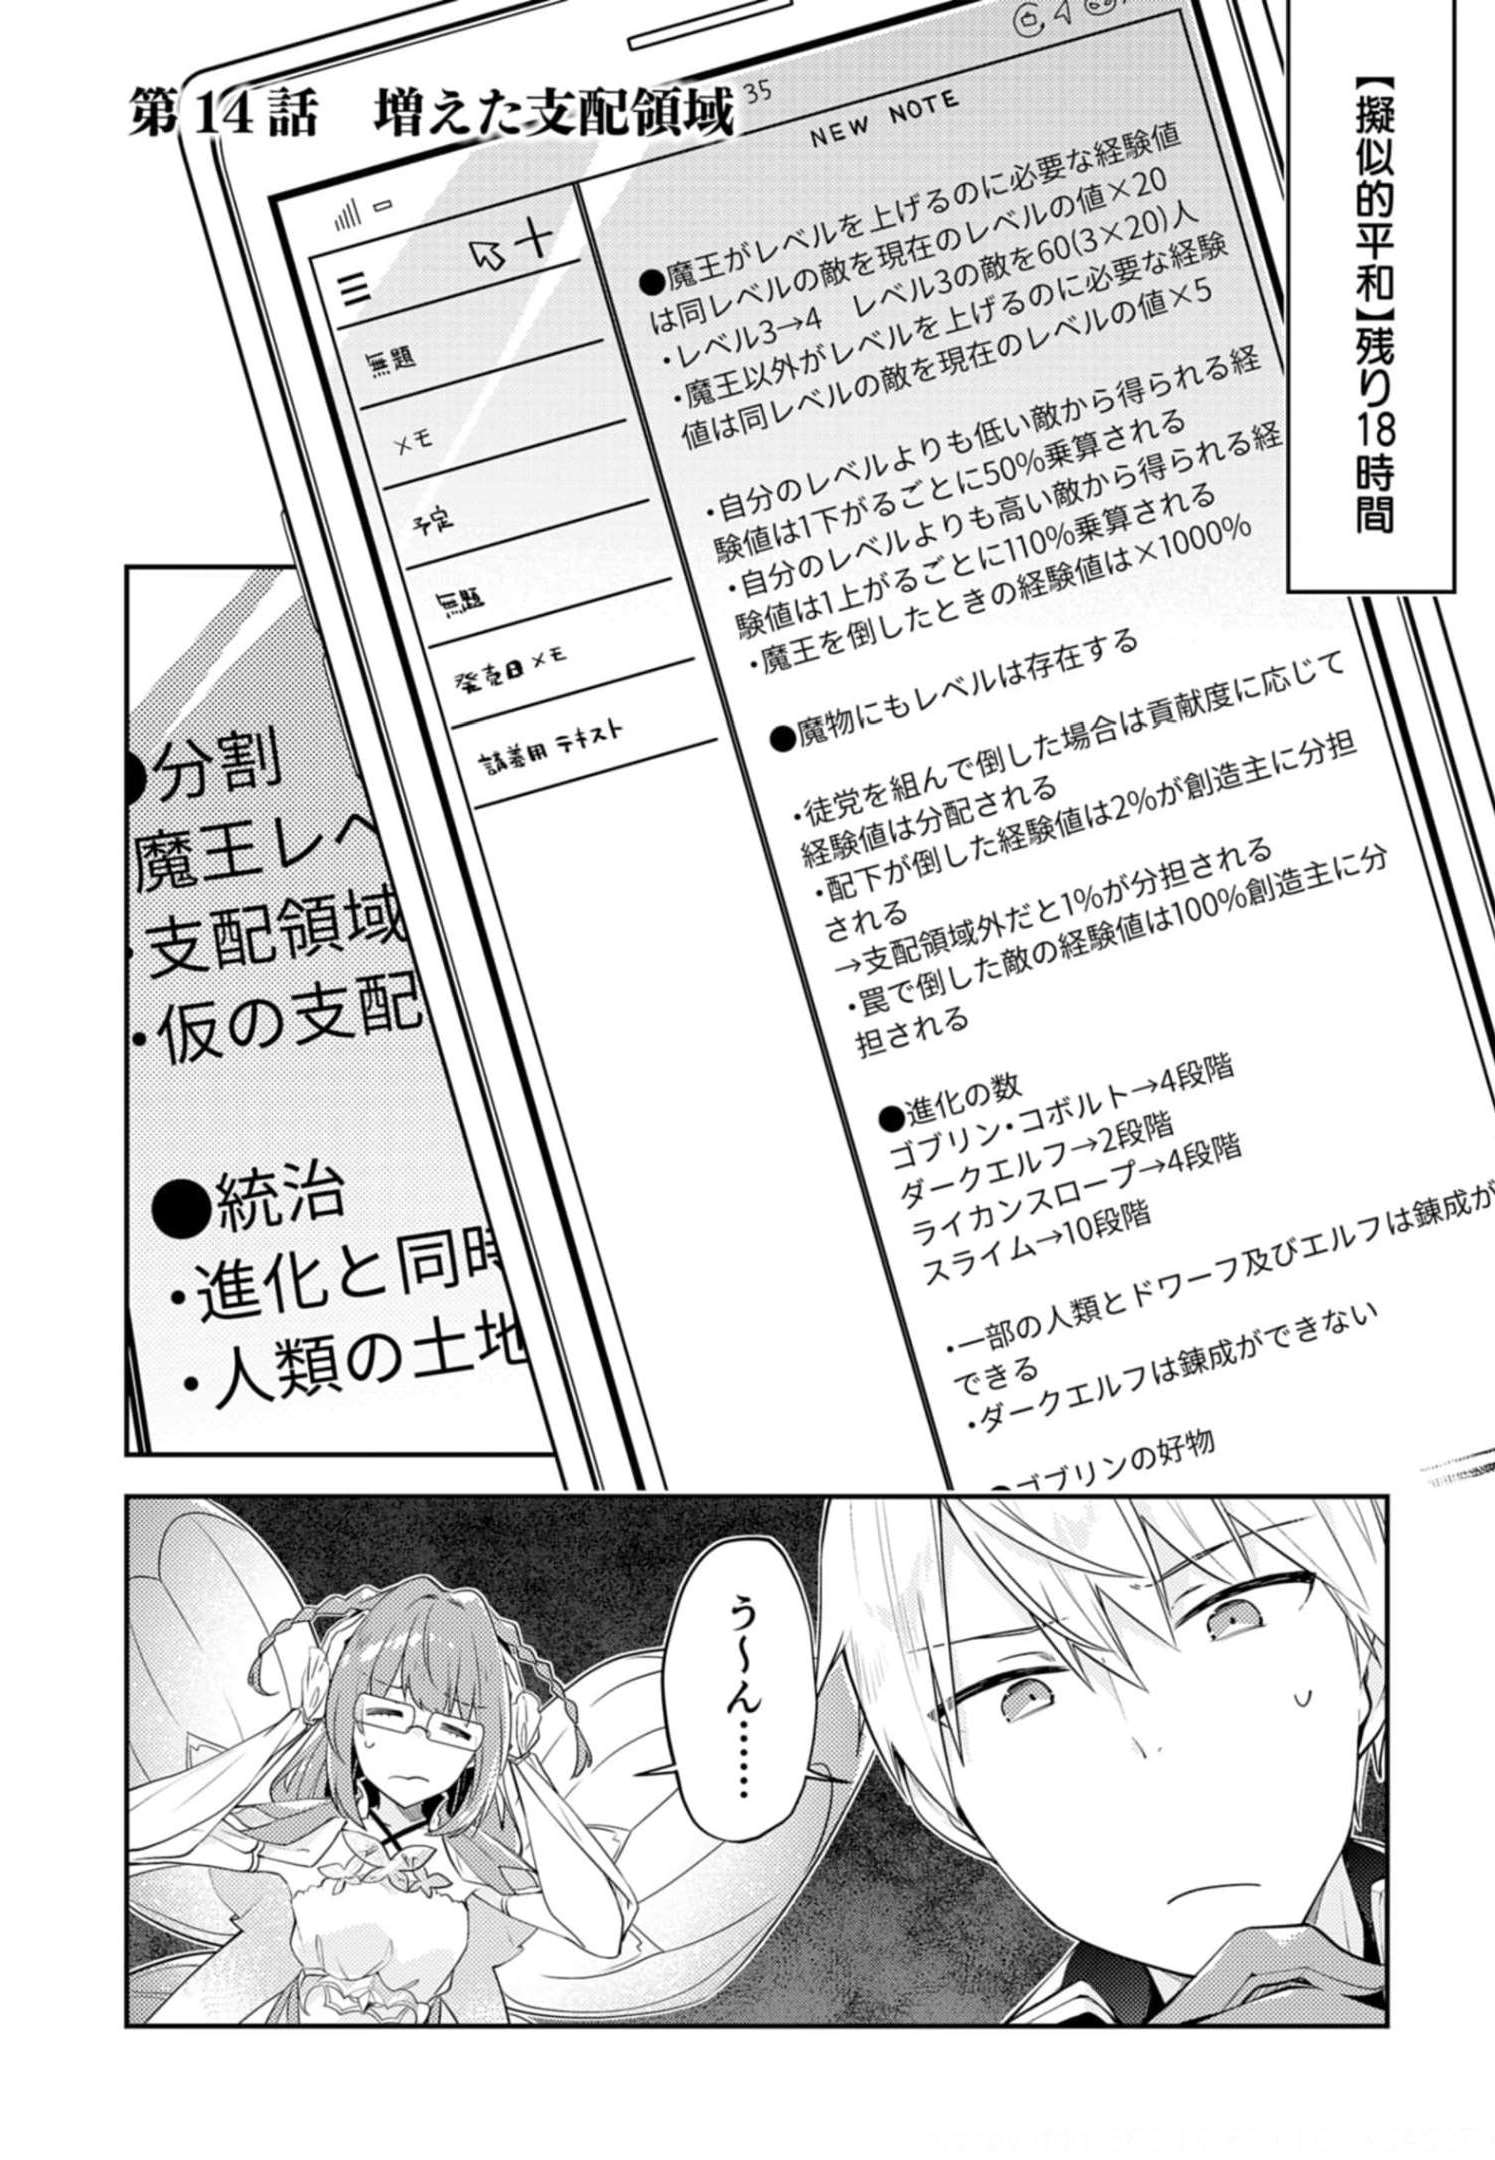 Dungeon Battle Royale ~Maou ni Nattanode Sekai Touitsu wo Mezashimasu~ - Chapter 14 - Page 1